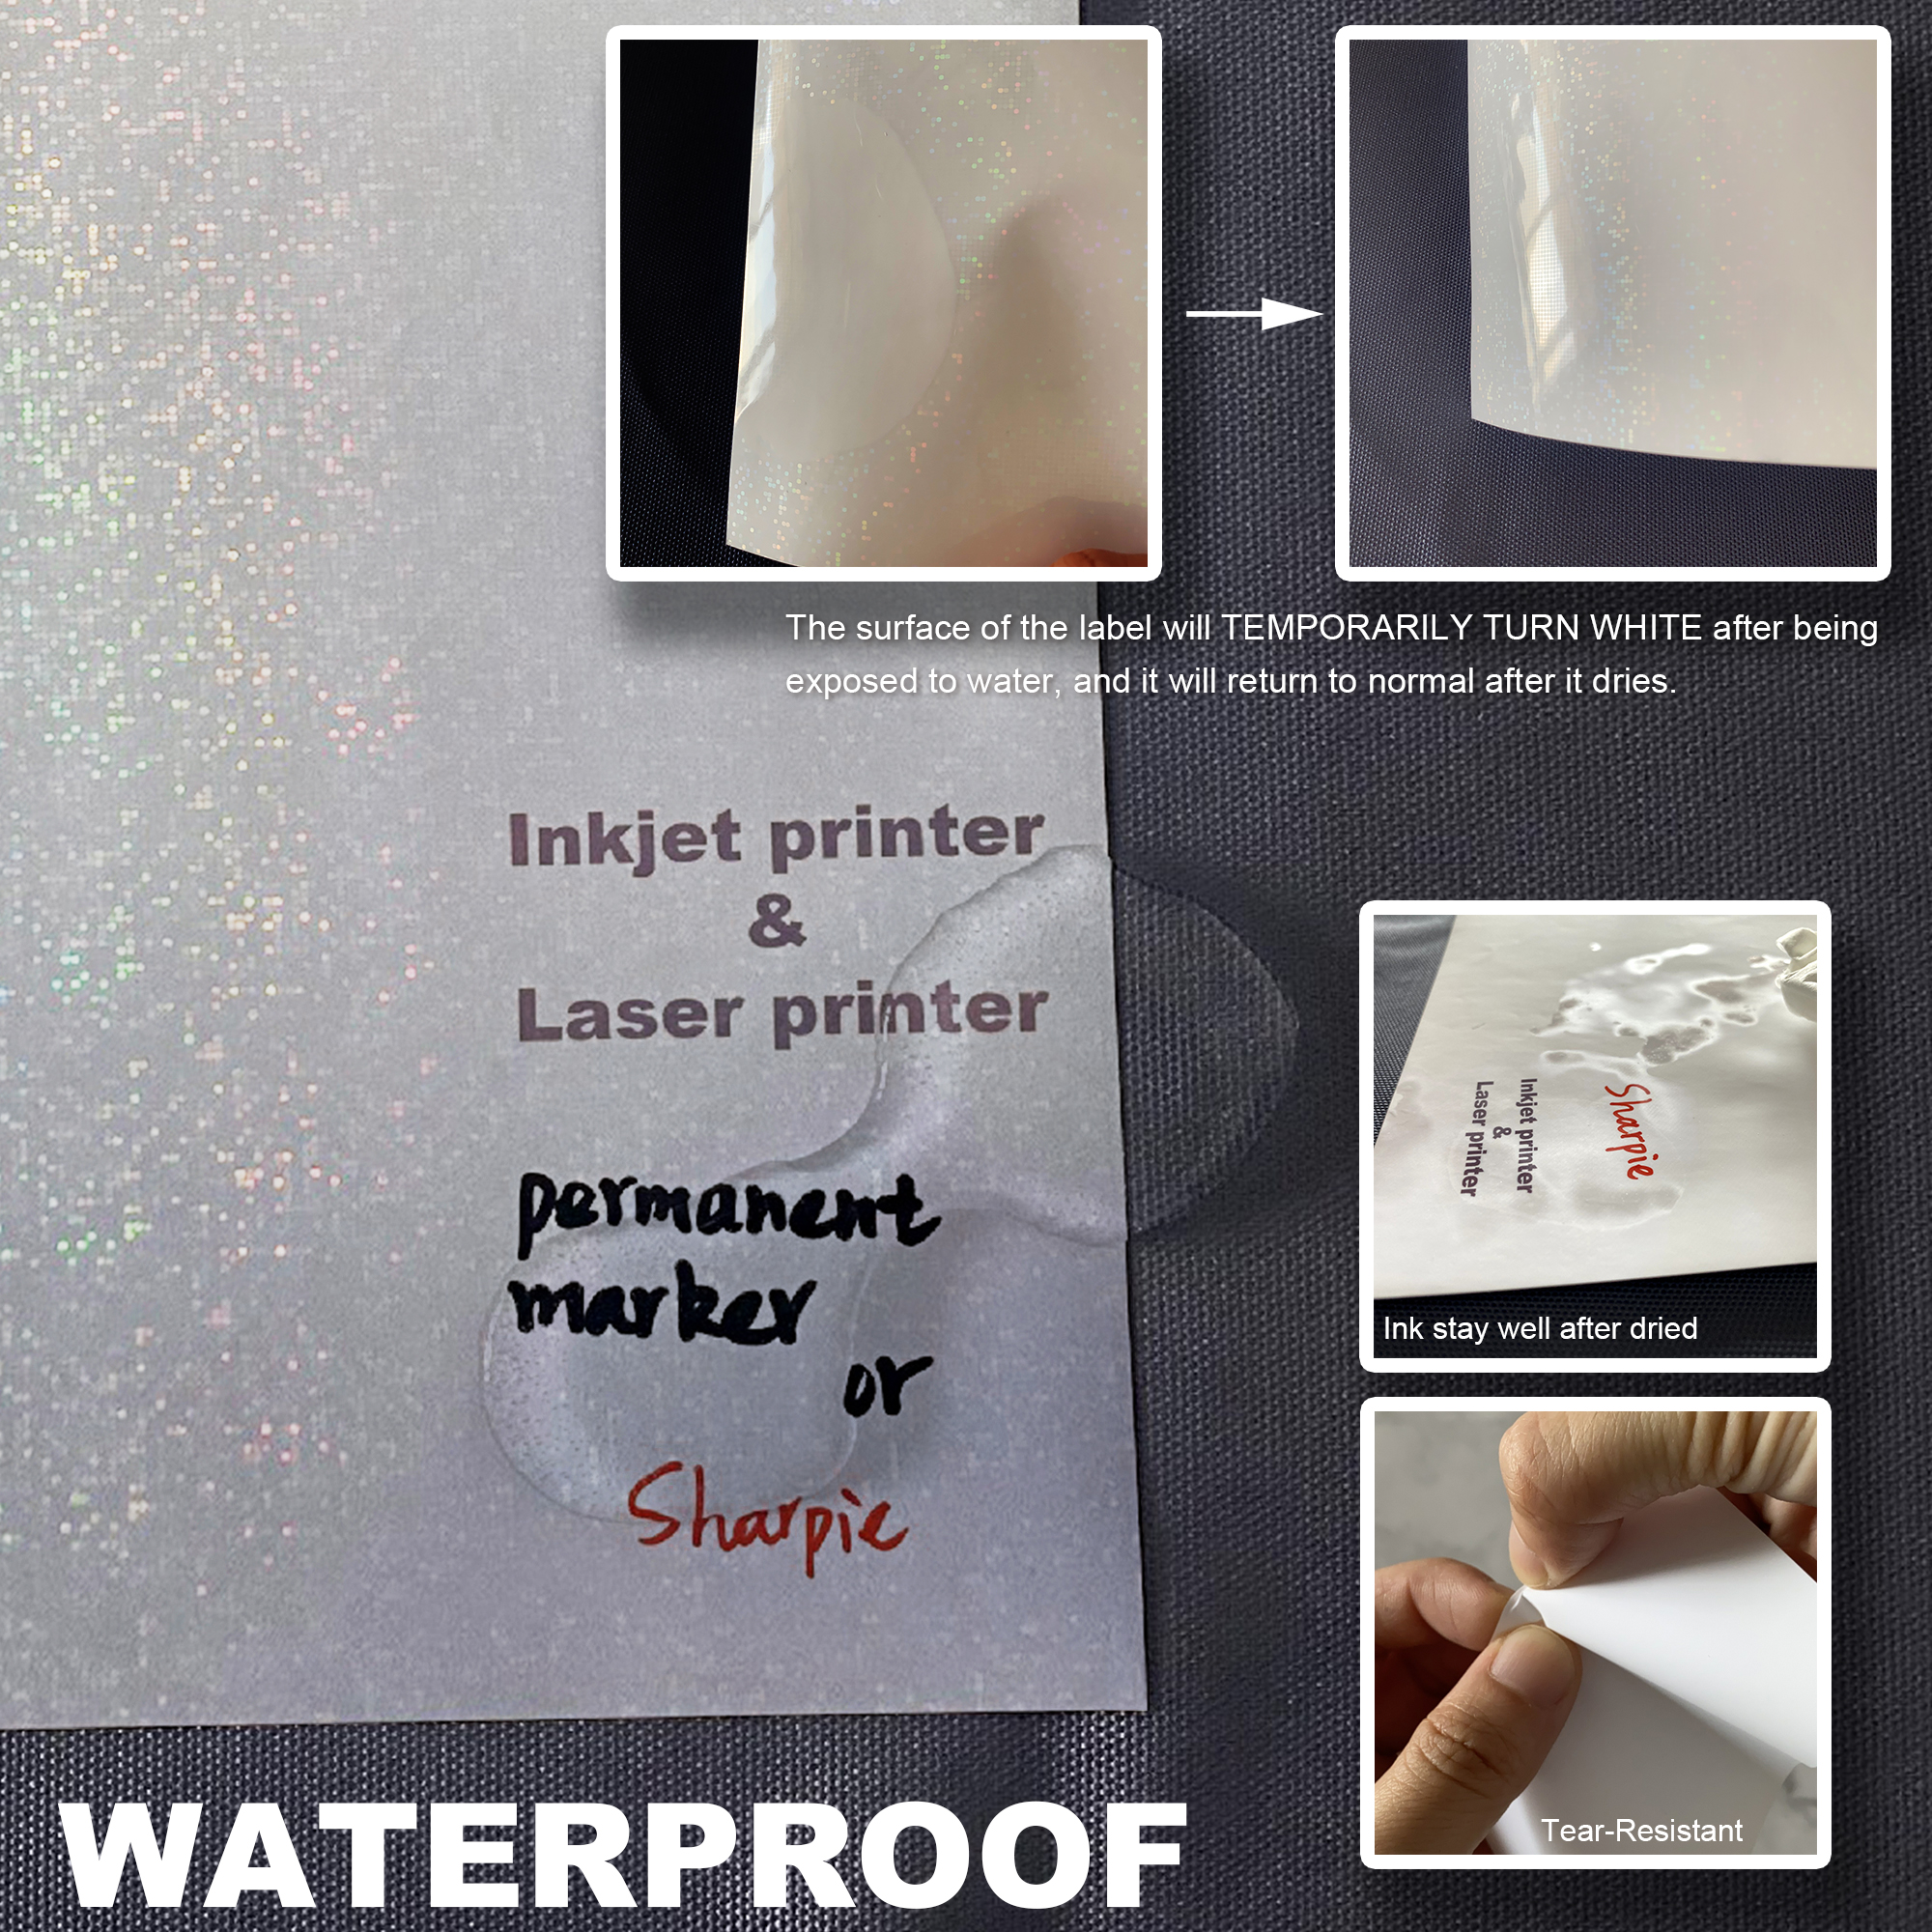 Laser jet print on transparent paper 